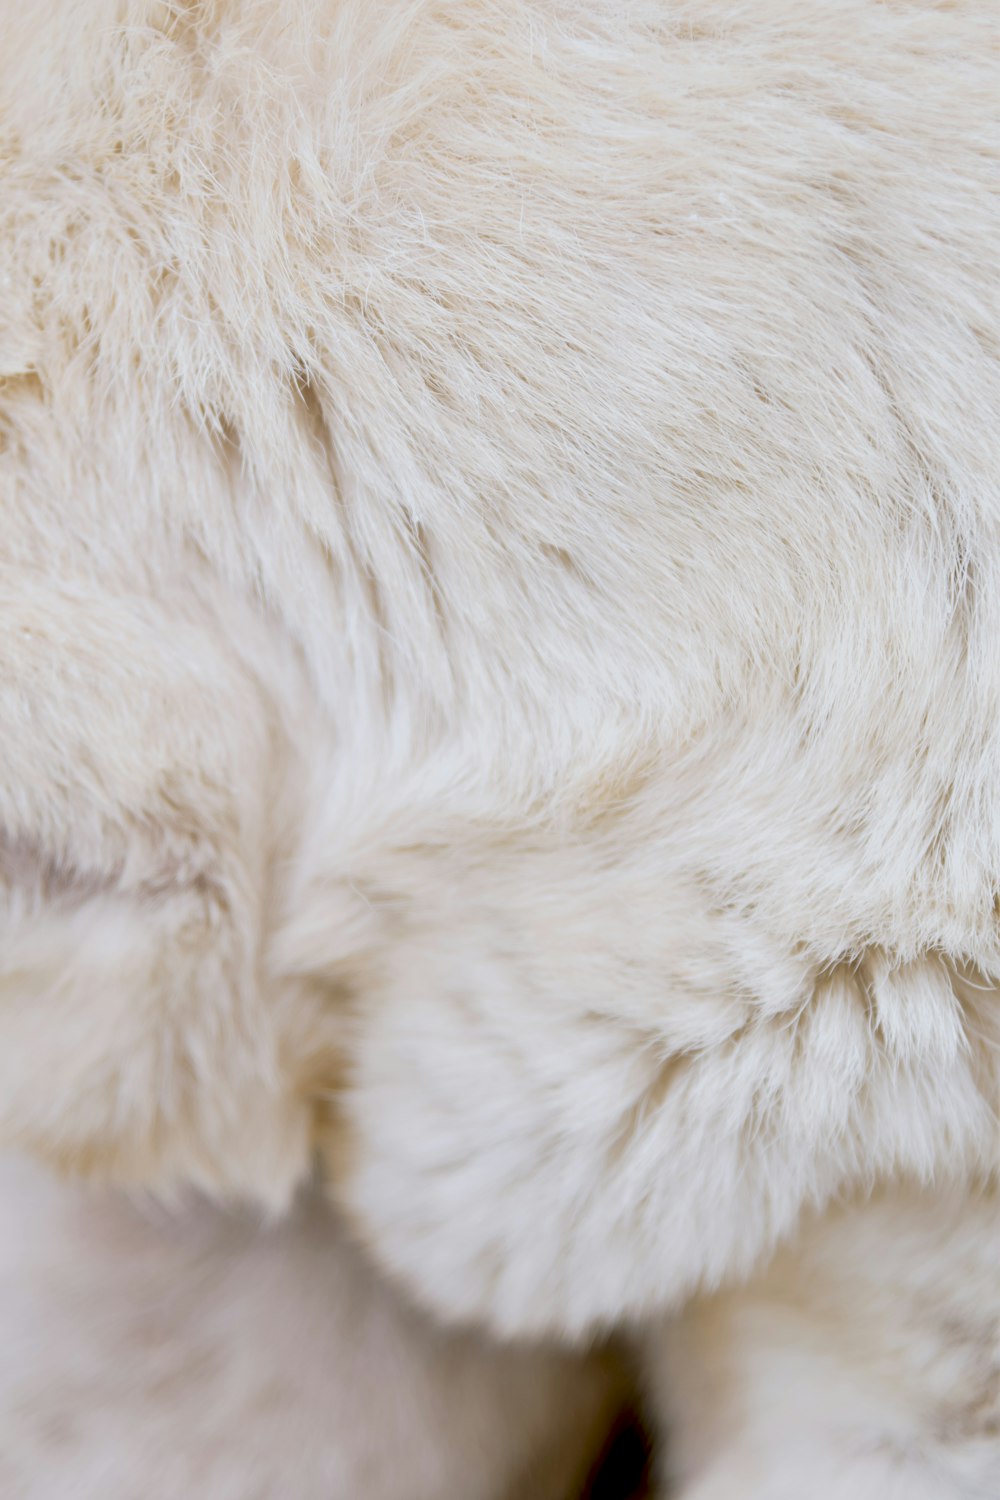 a close up of a polar bear's fur